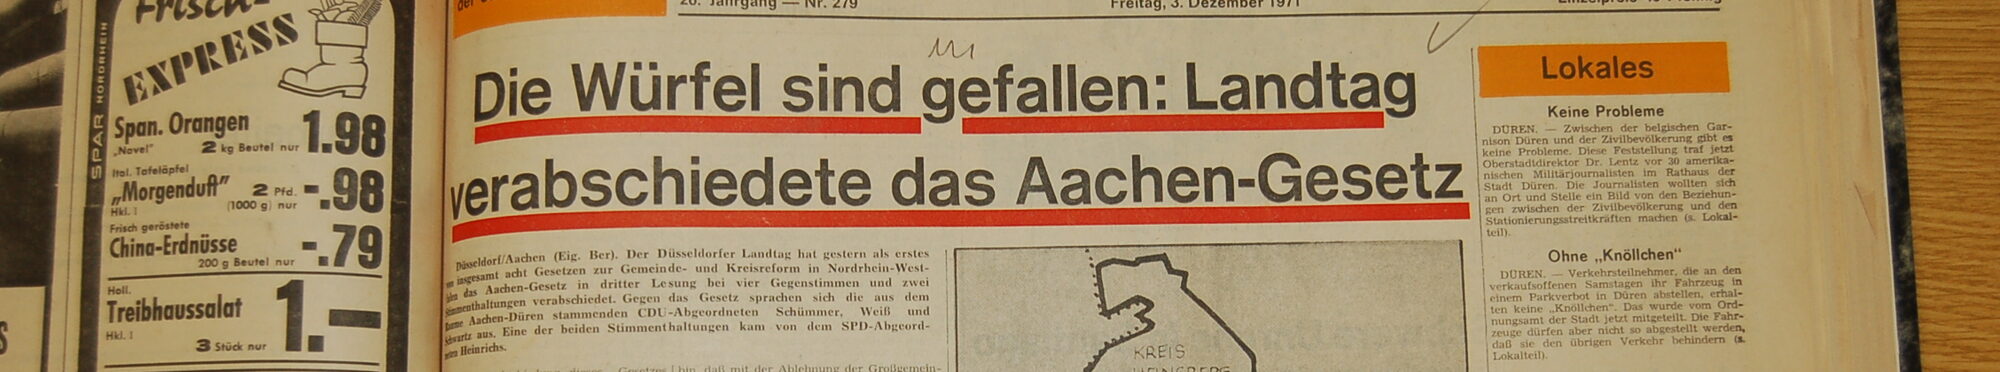 Zeitungsbericht im Archiv der Dürener Zeitung.